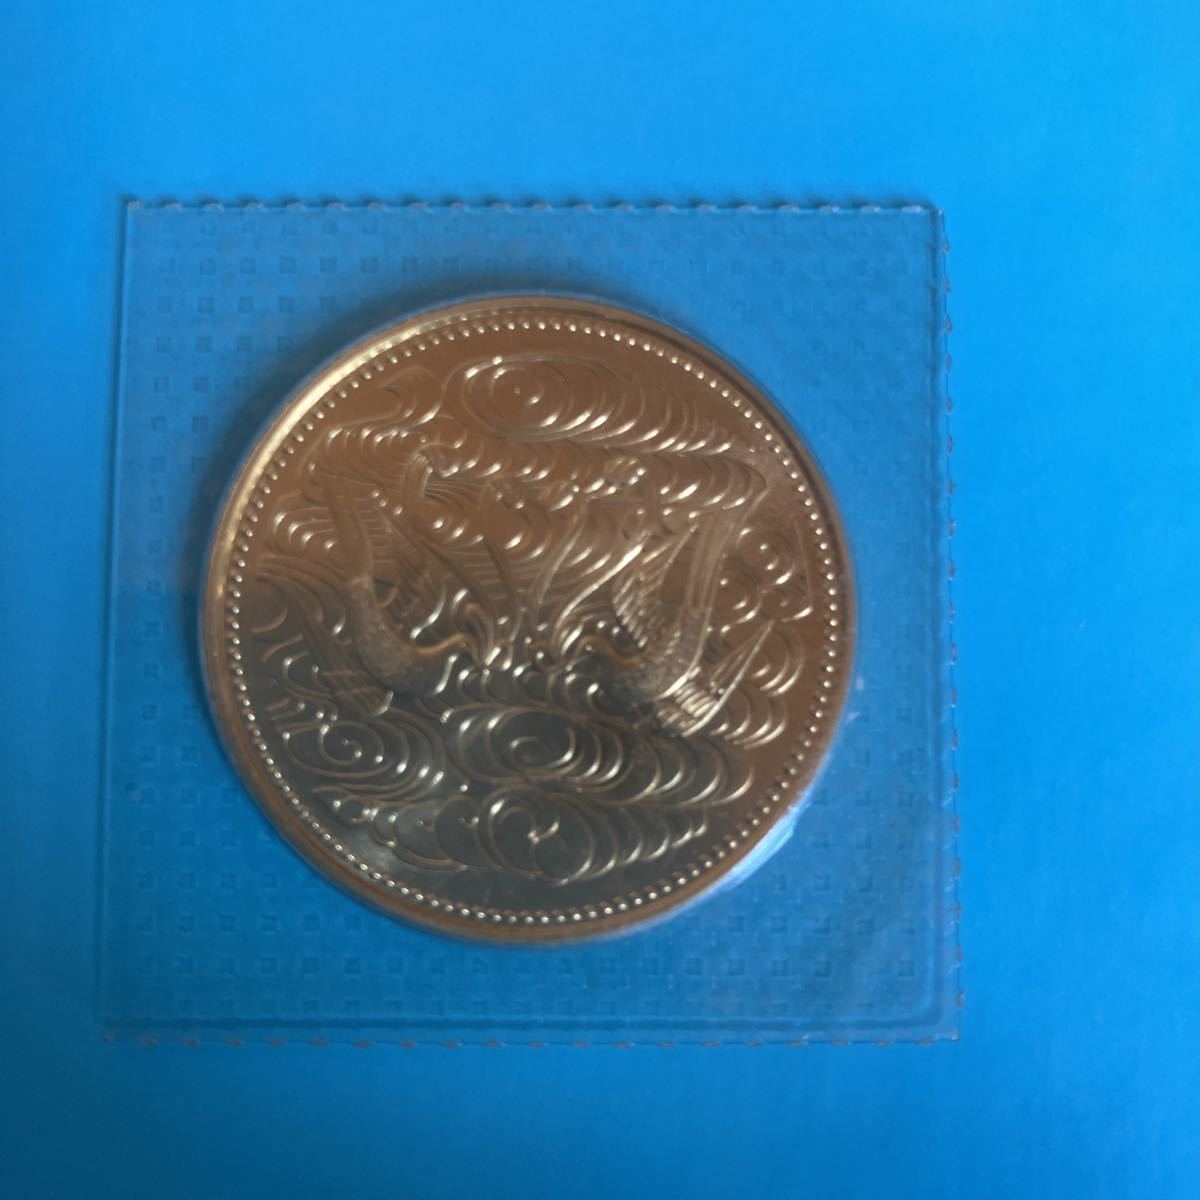 送料無料 昭和天皇 天皇陛下 御在位60年 1万円銀貨10万円金貨のセット 記念硬貨 ブリスターパック